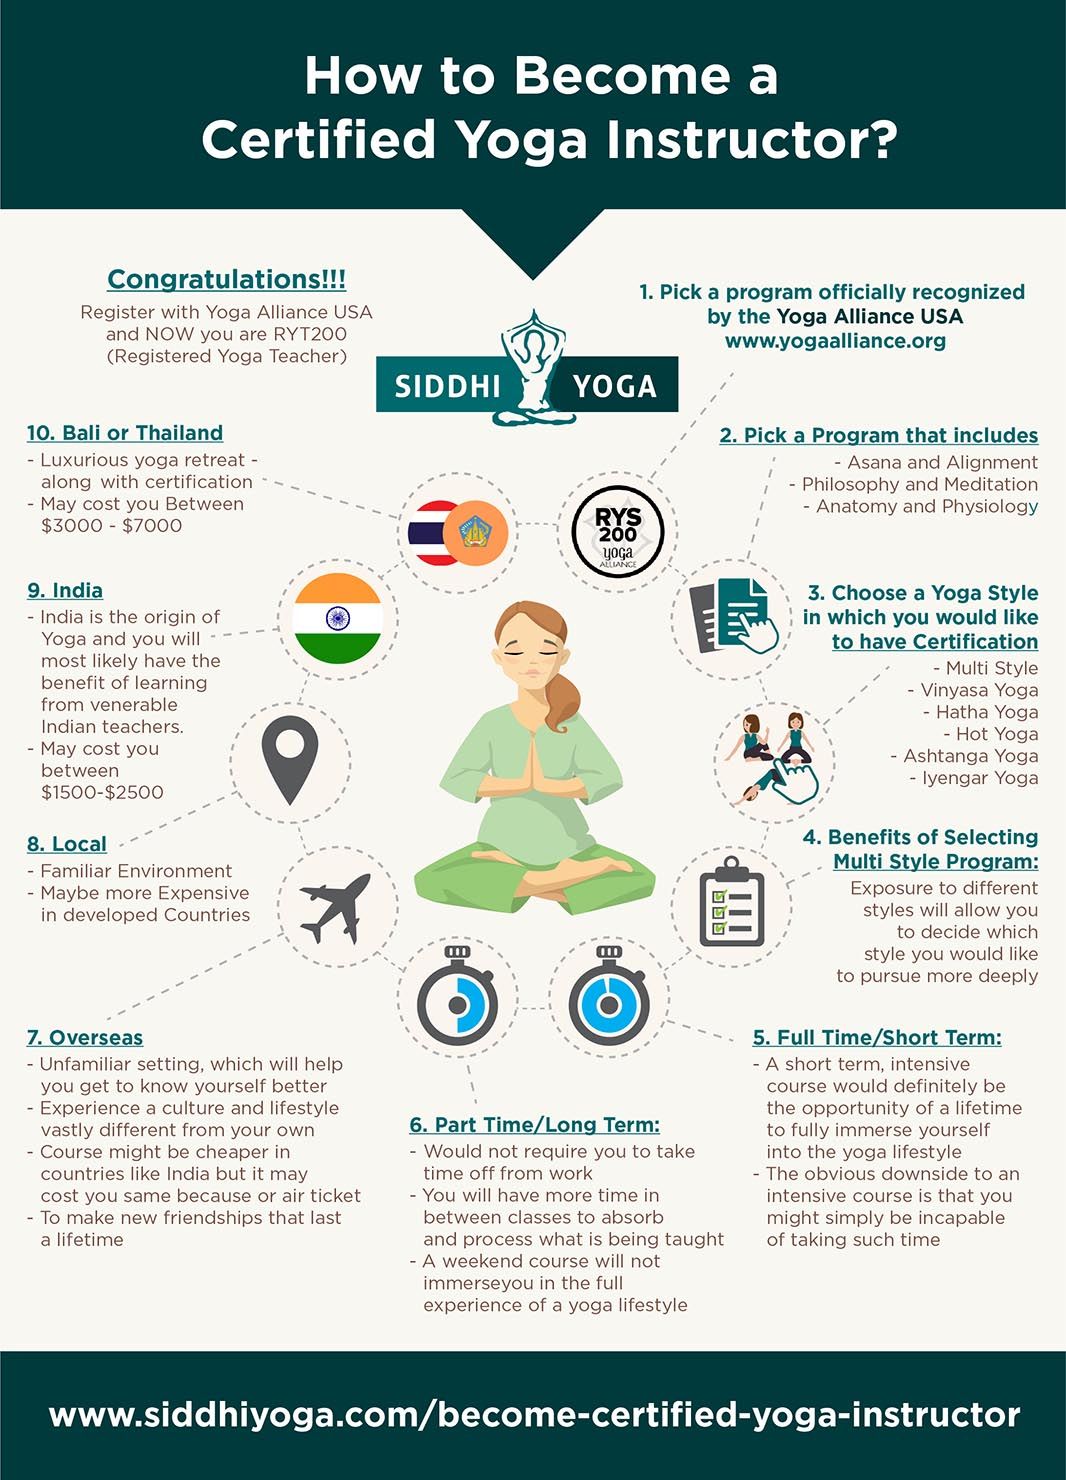 Buy La enseñanza del yoga / Teaching Yoga: Fundamentos Y Tecnicas